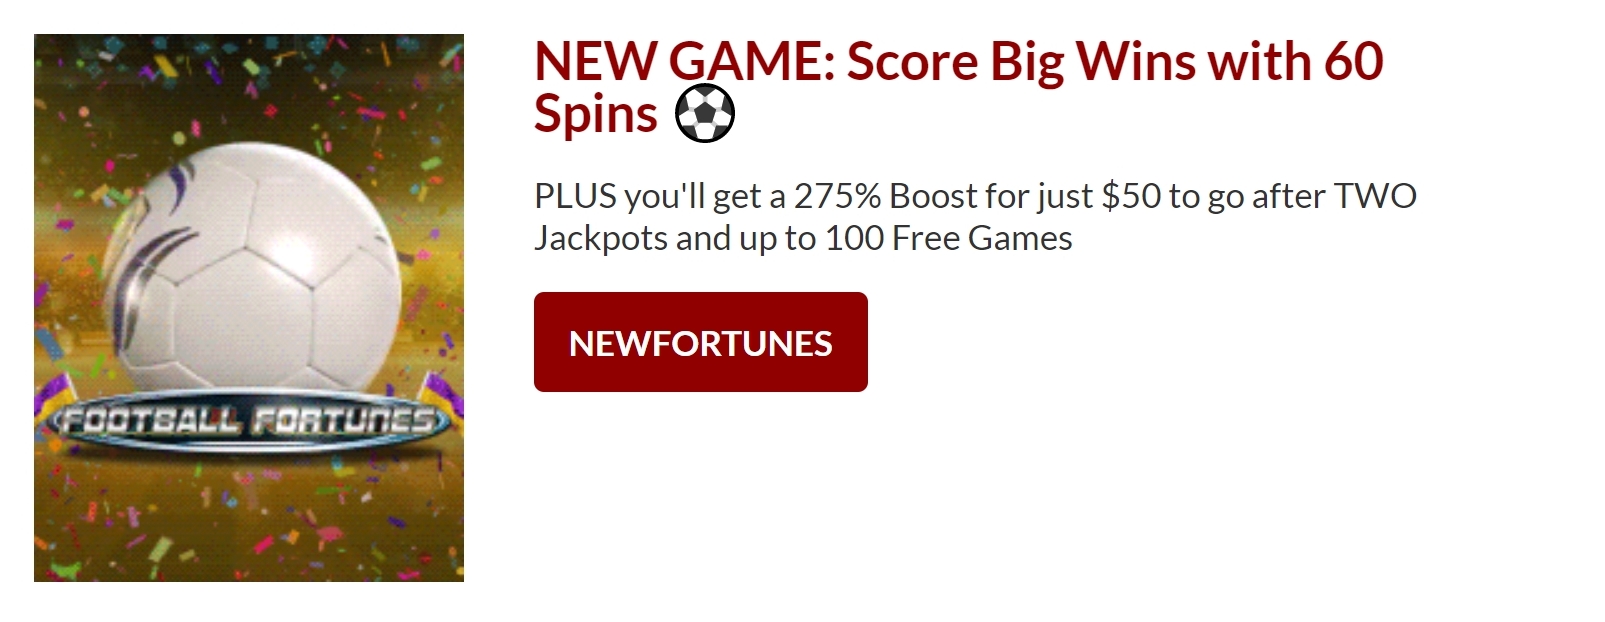 planet 7 casino bonus codes no deposit